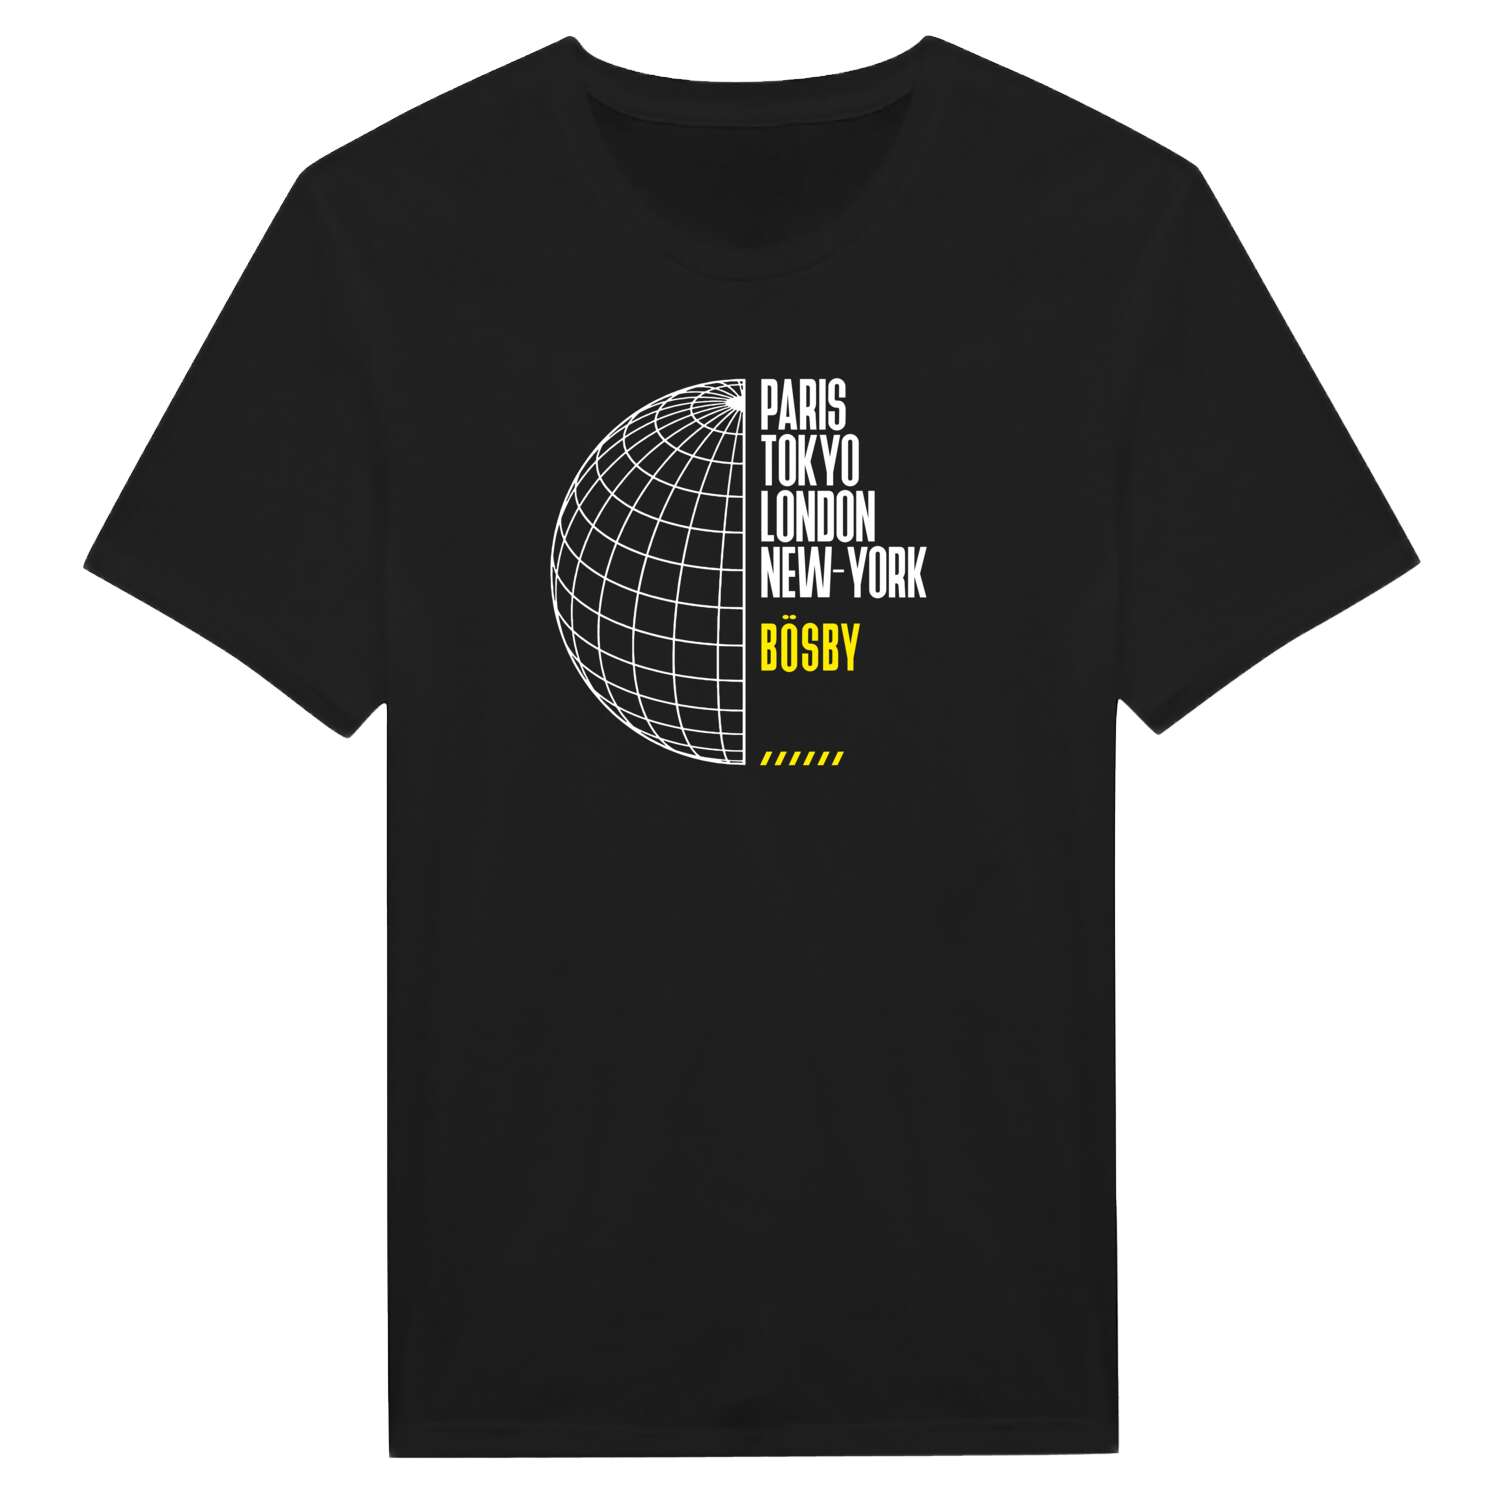 Bösby T-Shirt »Paris Tokyo London«